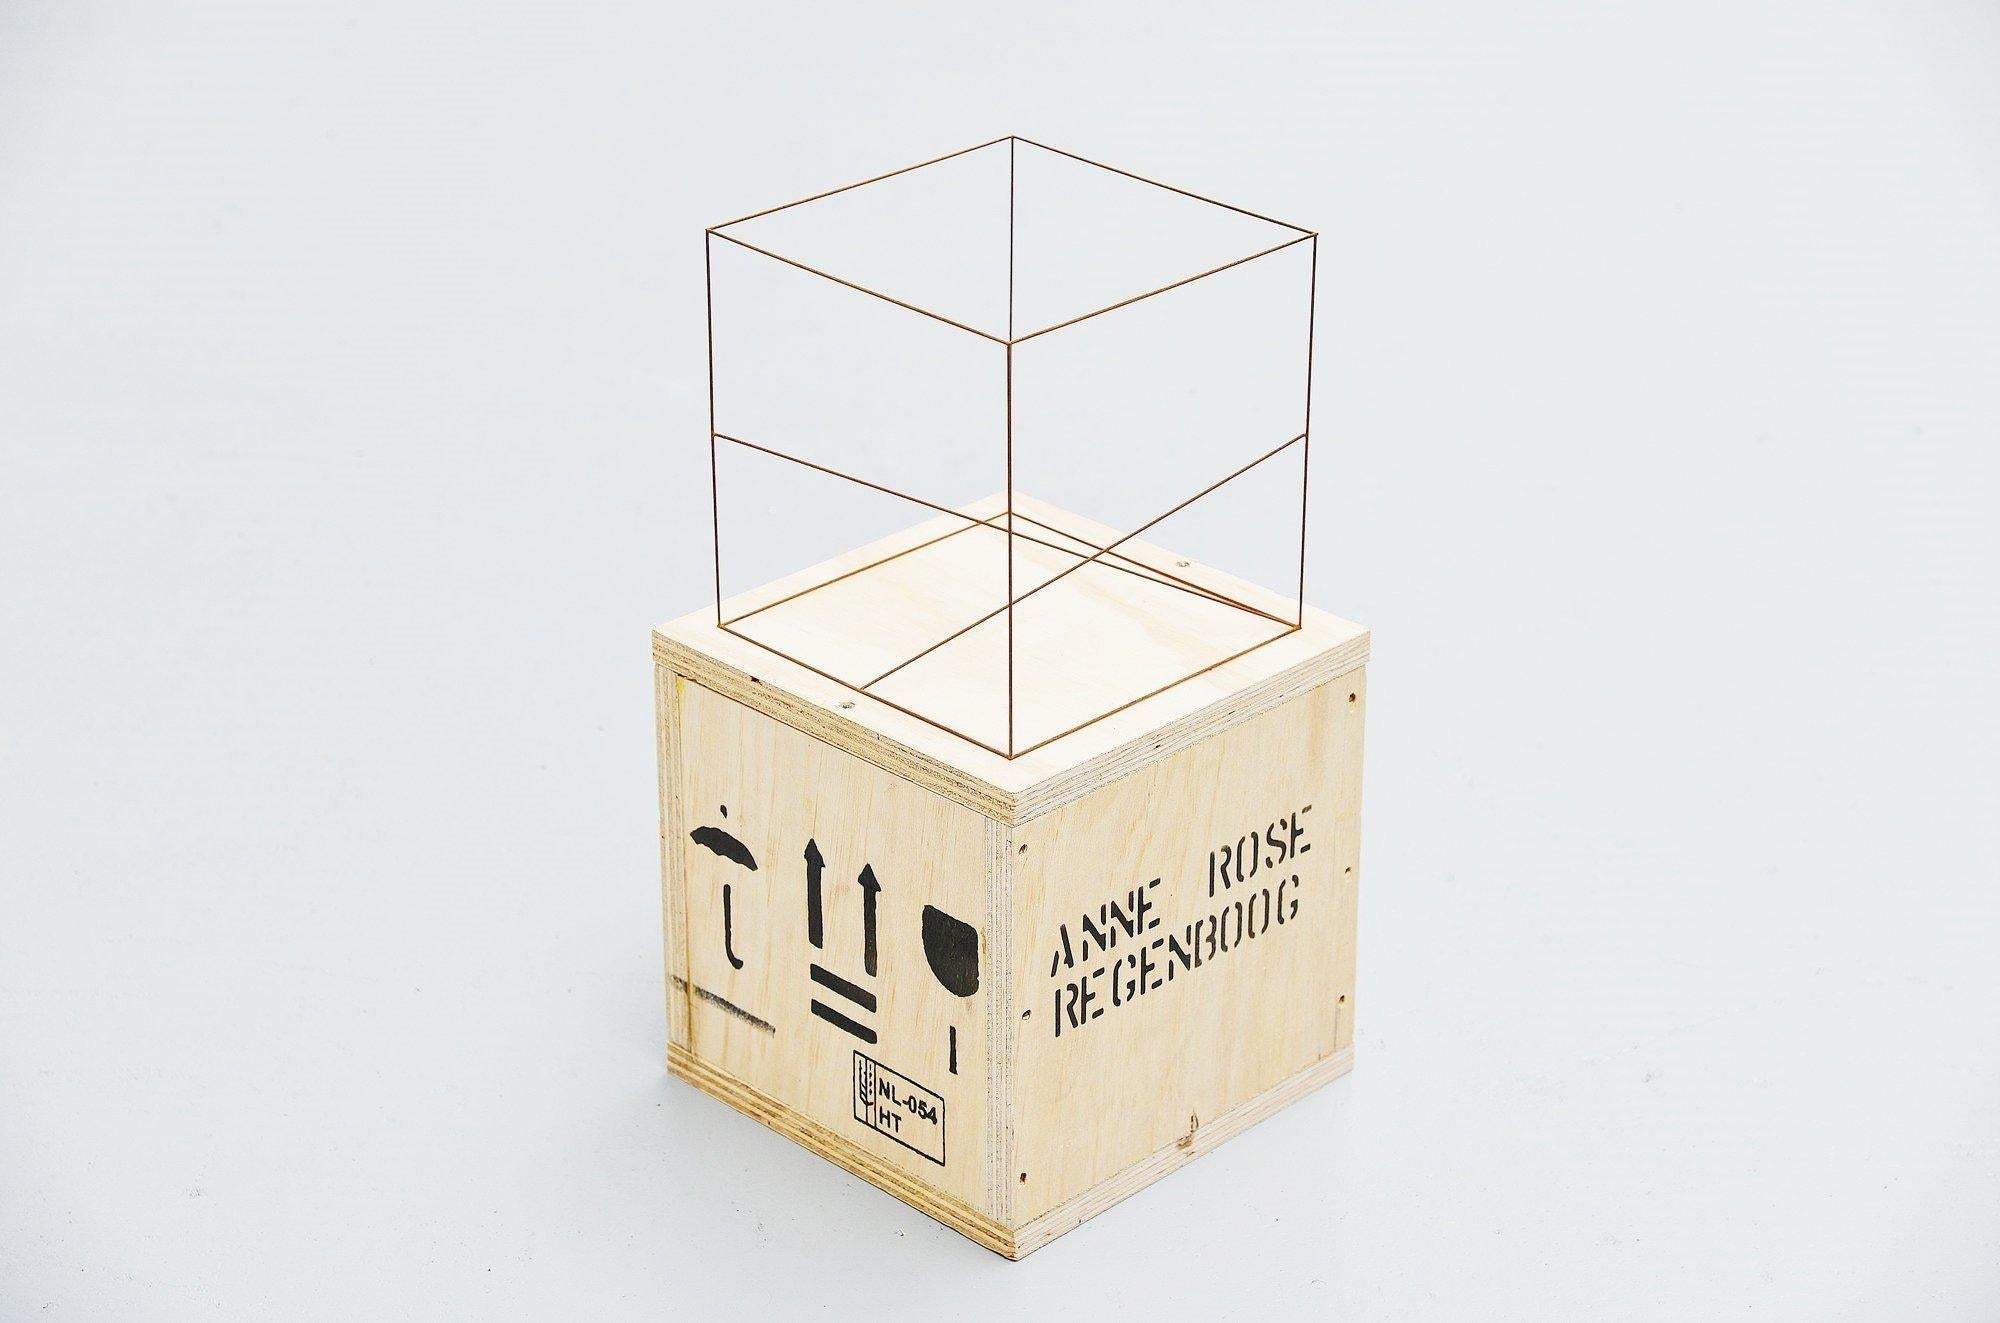 Steel Anne Rose Regenboog Cubes Cross Set, Den Haag, 2015 For Sale